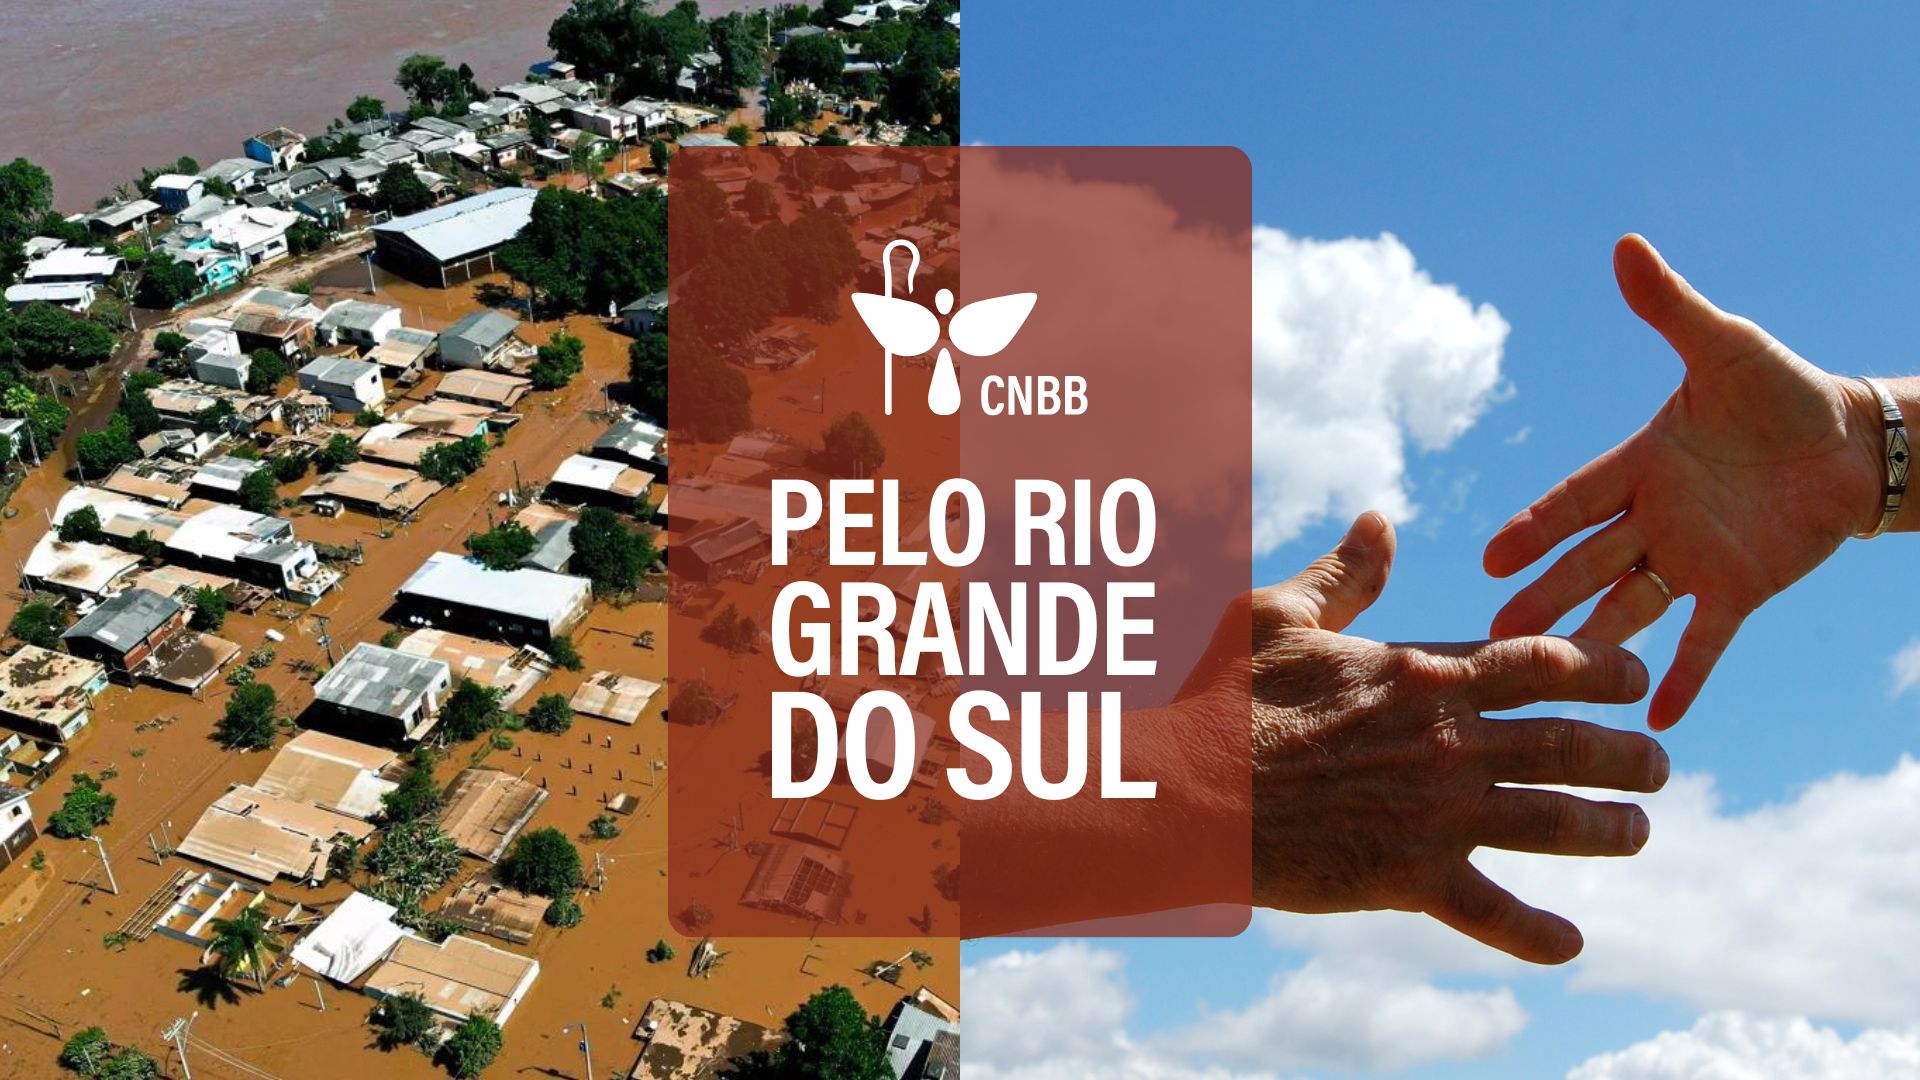 CNBB Pelo Rio Grande Do Sul 